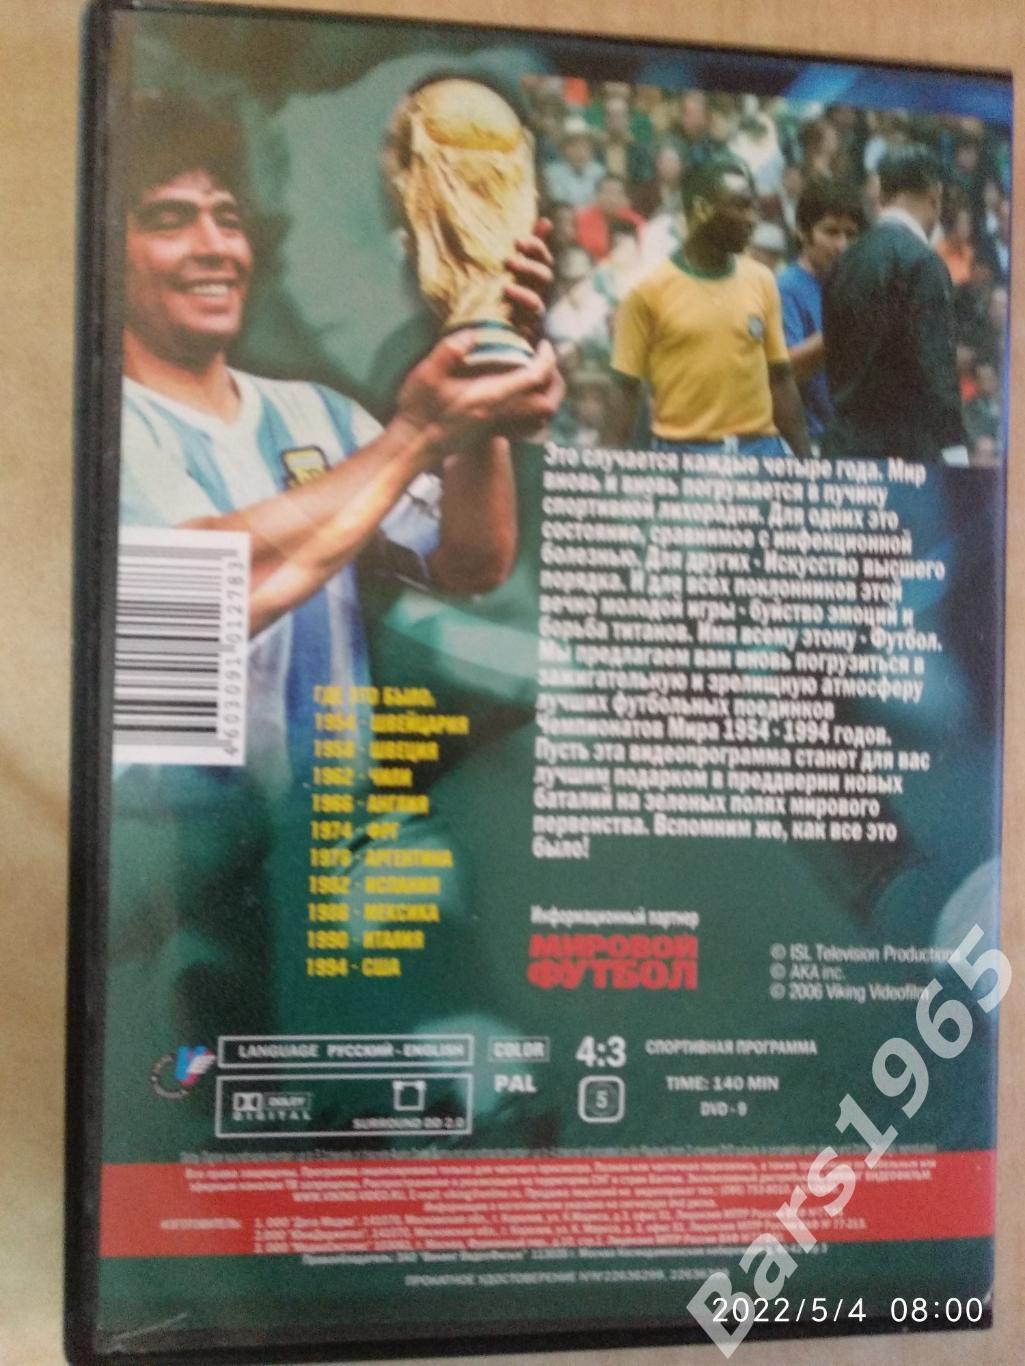 Легенды чемпионатов мира 1954-1994 Обзор и лучшие моменты DVD 1